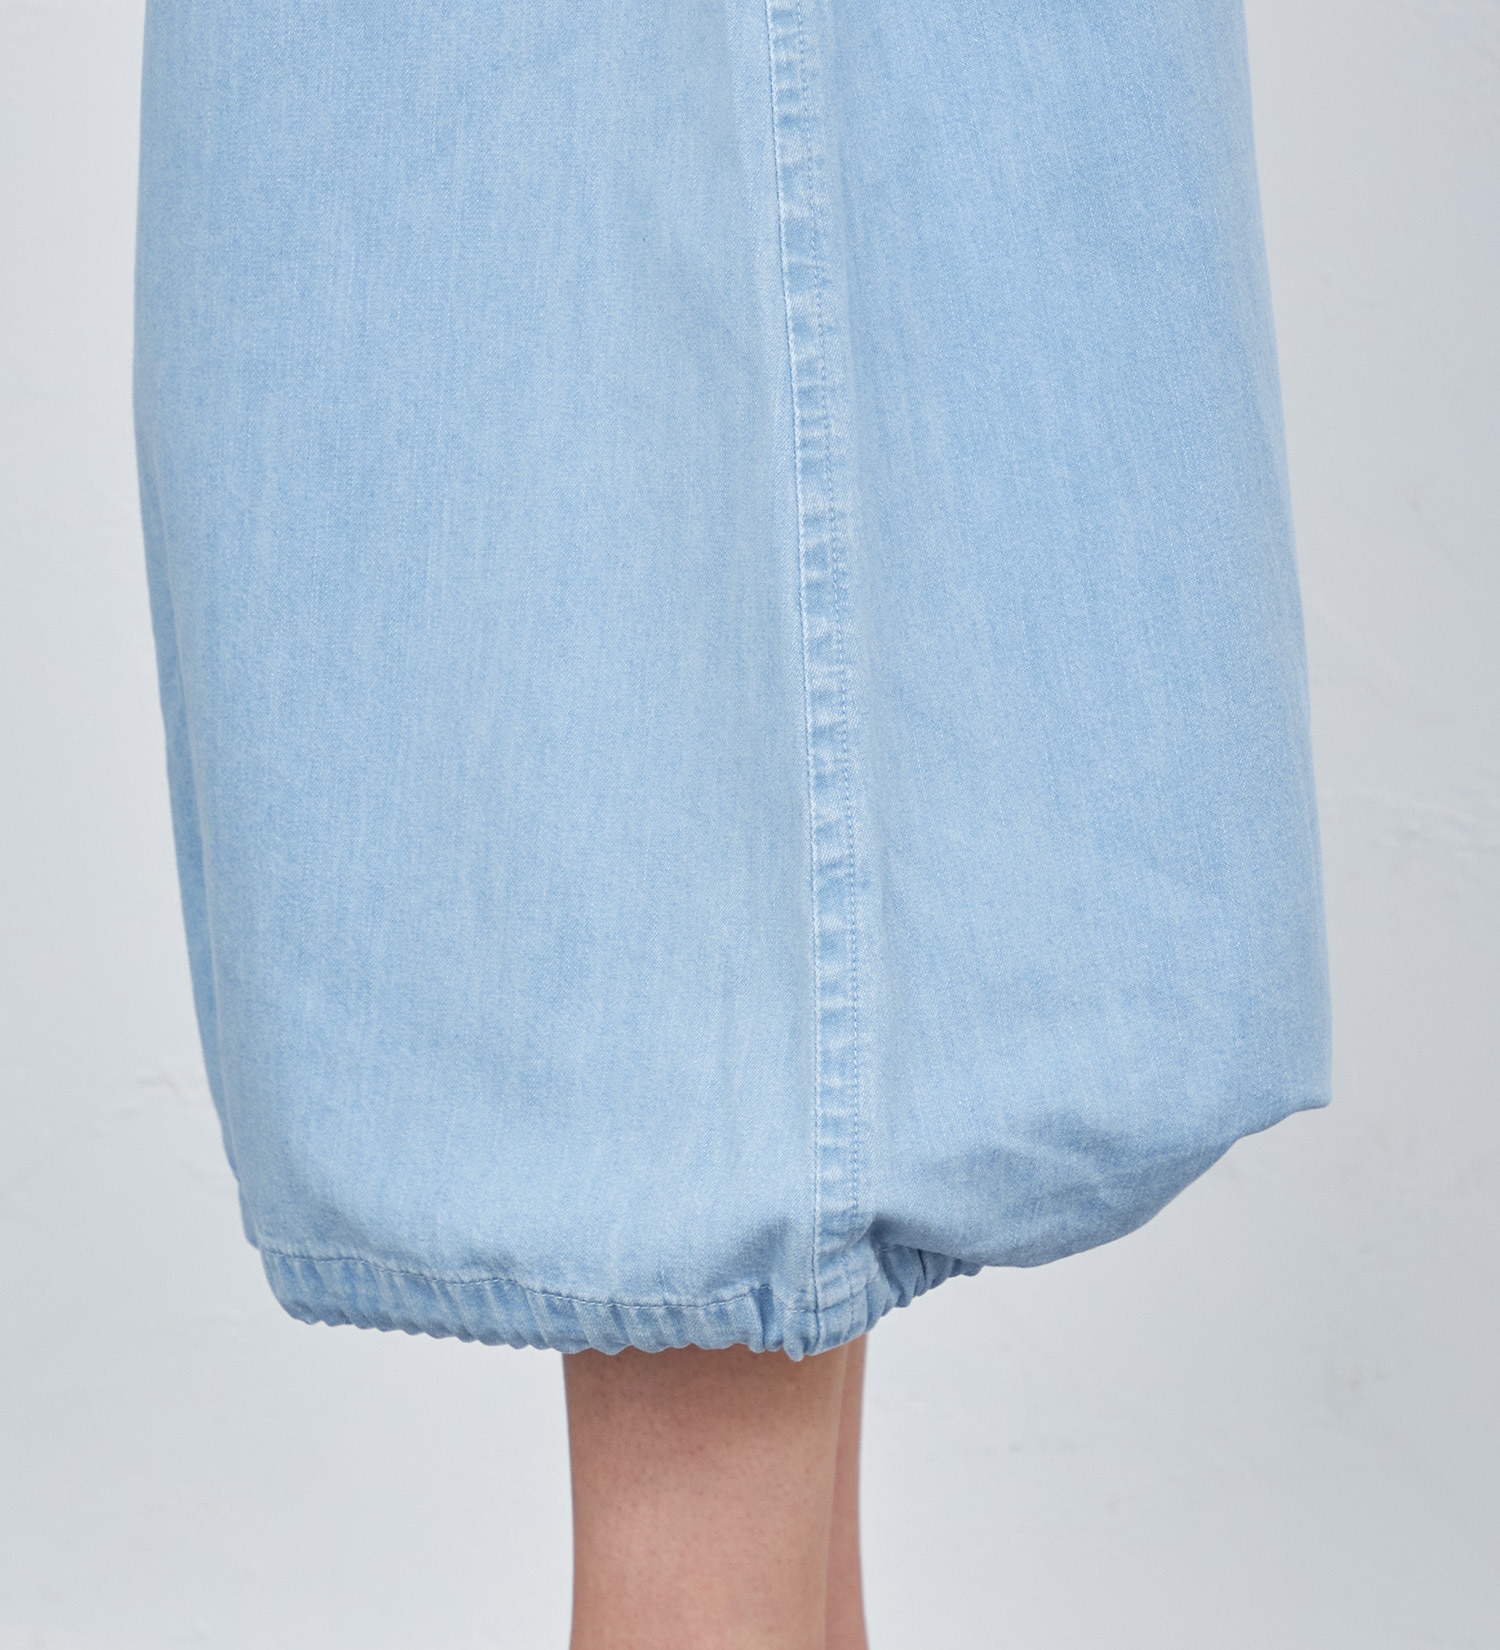 Lee(リー)の【GW SALE】イージーモッズスカート|スカート/スカート/レディース|淡色ブルー